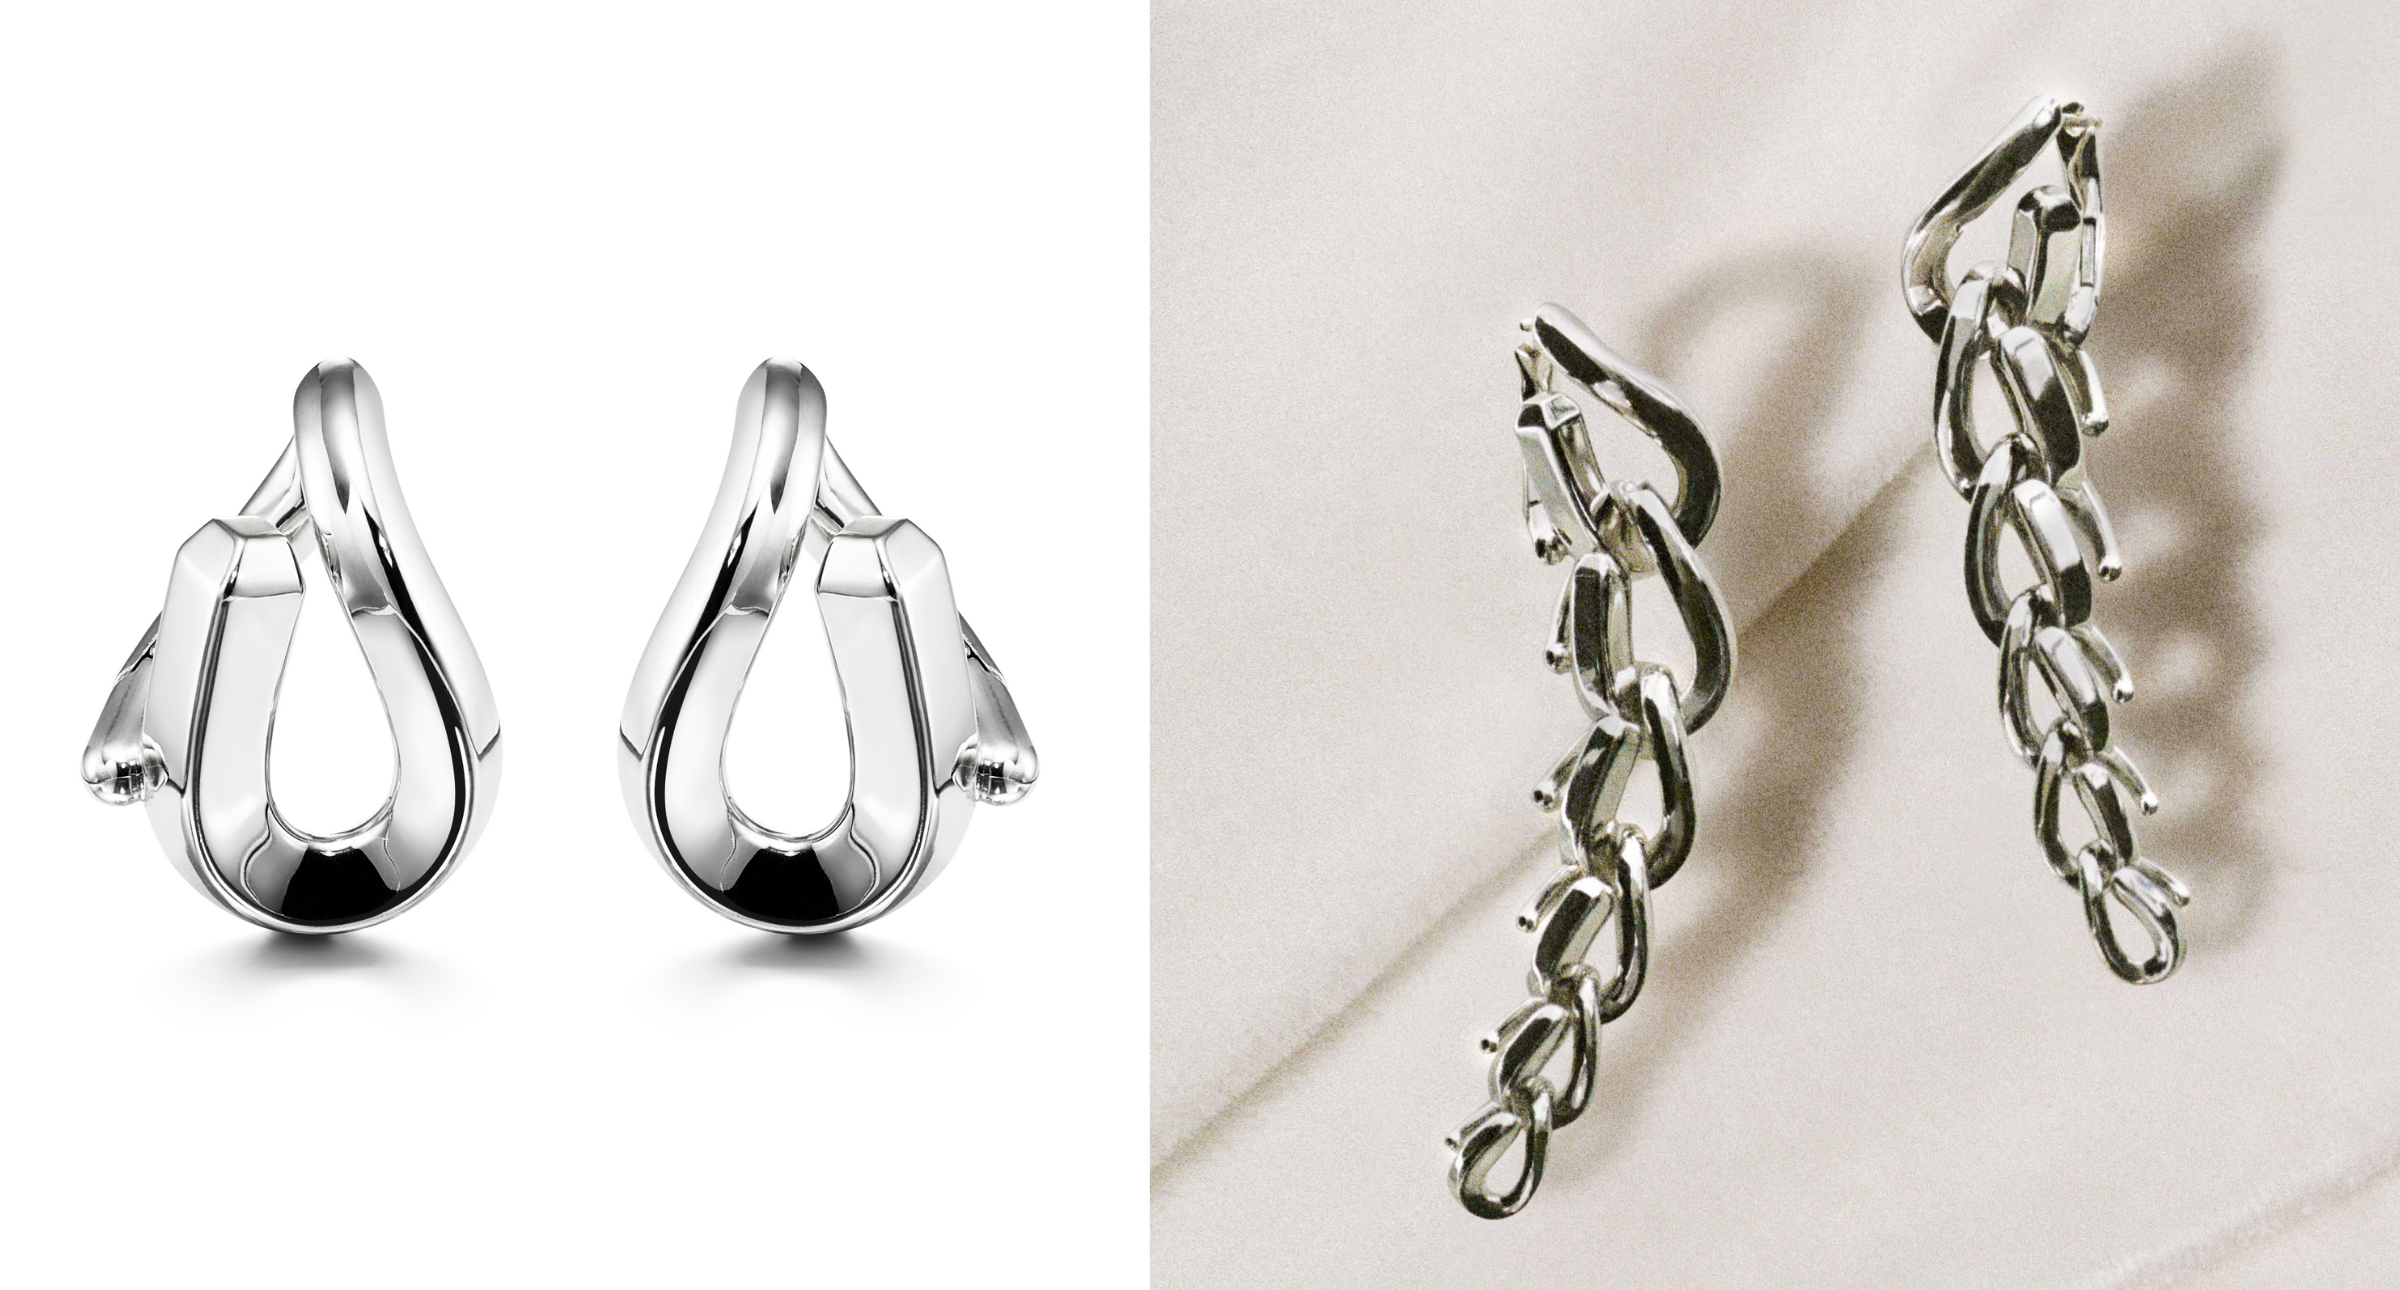 【#Jewelry】Tiffany 全新純銀珠寶致敬古典，開口式鏈結設計別樹一格